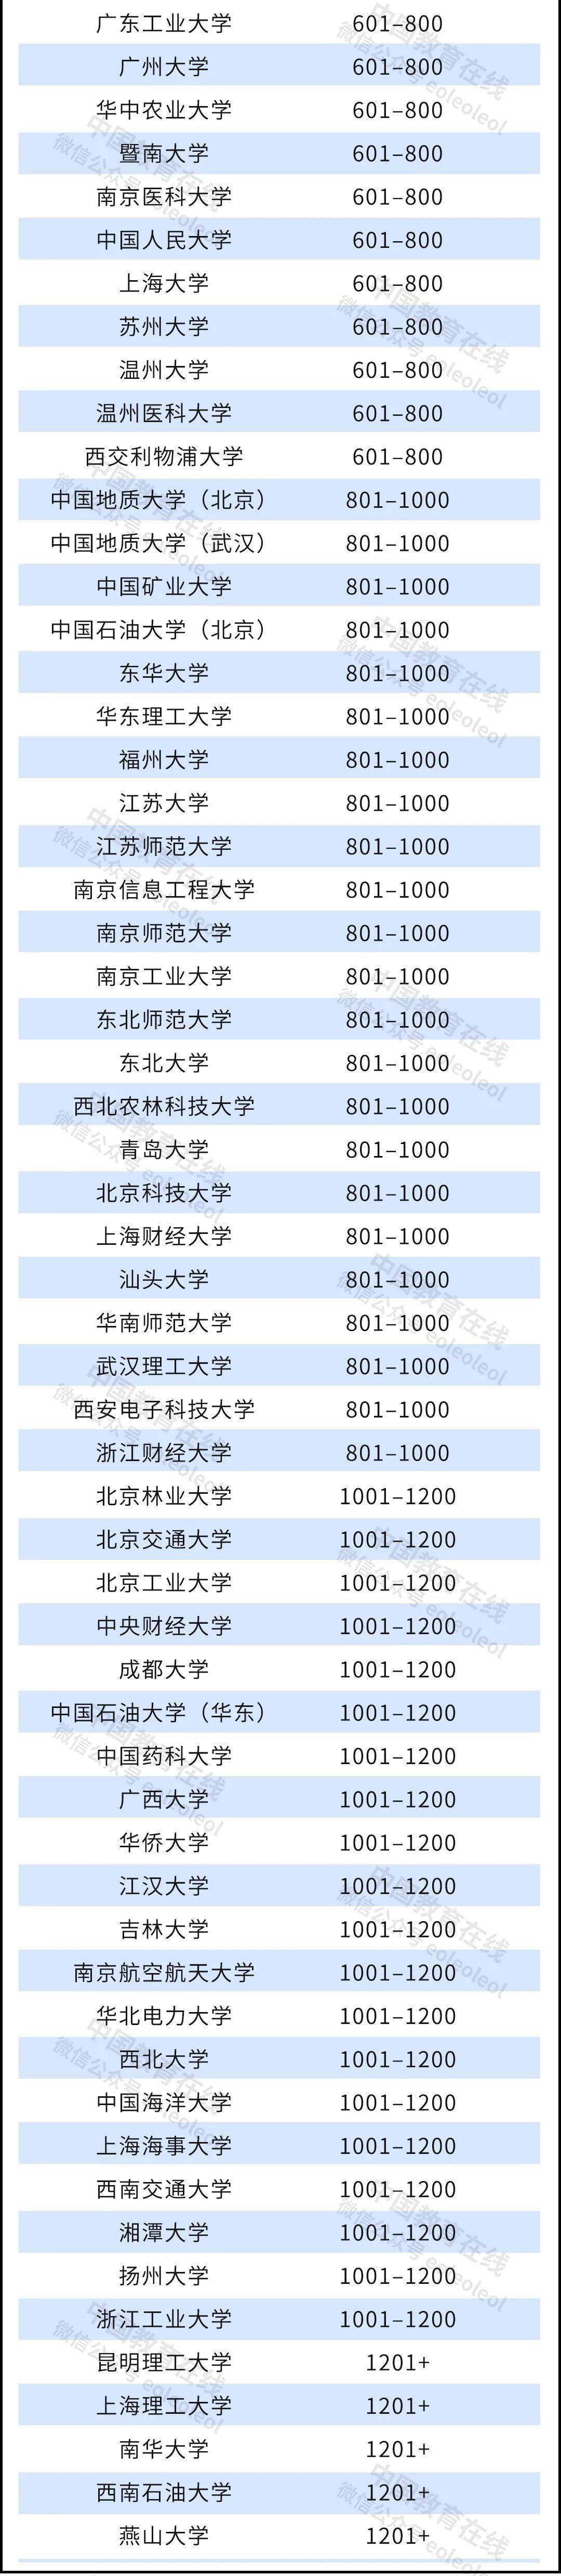 1匹空调排行_杀出一匹黑马!2022世界大学排名刚刚公布,中国147校上榜